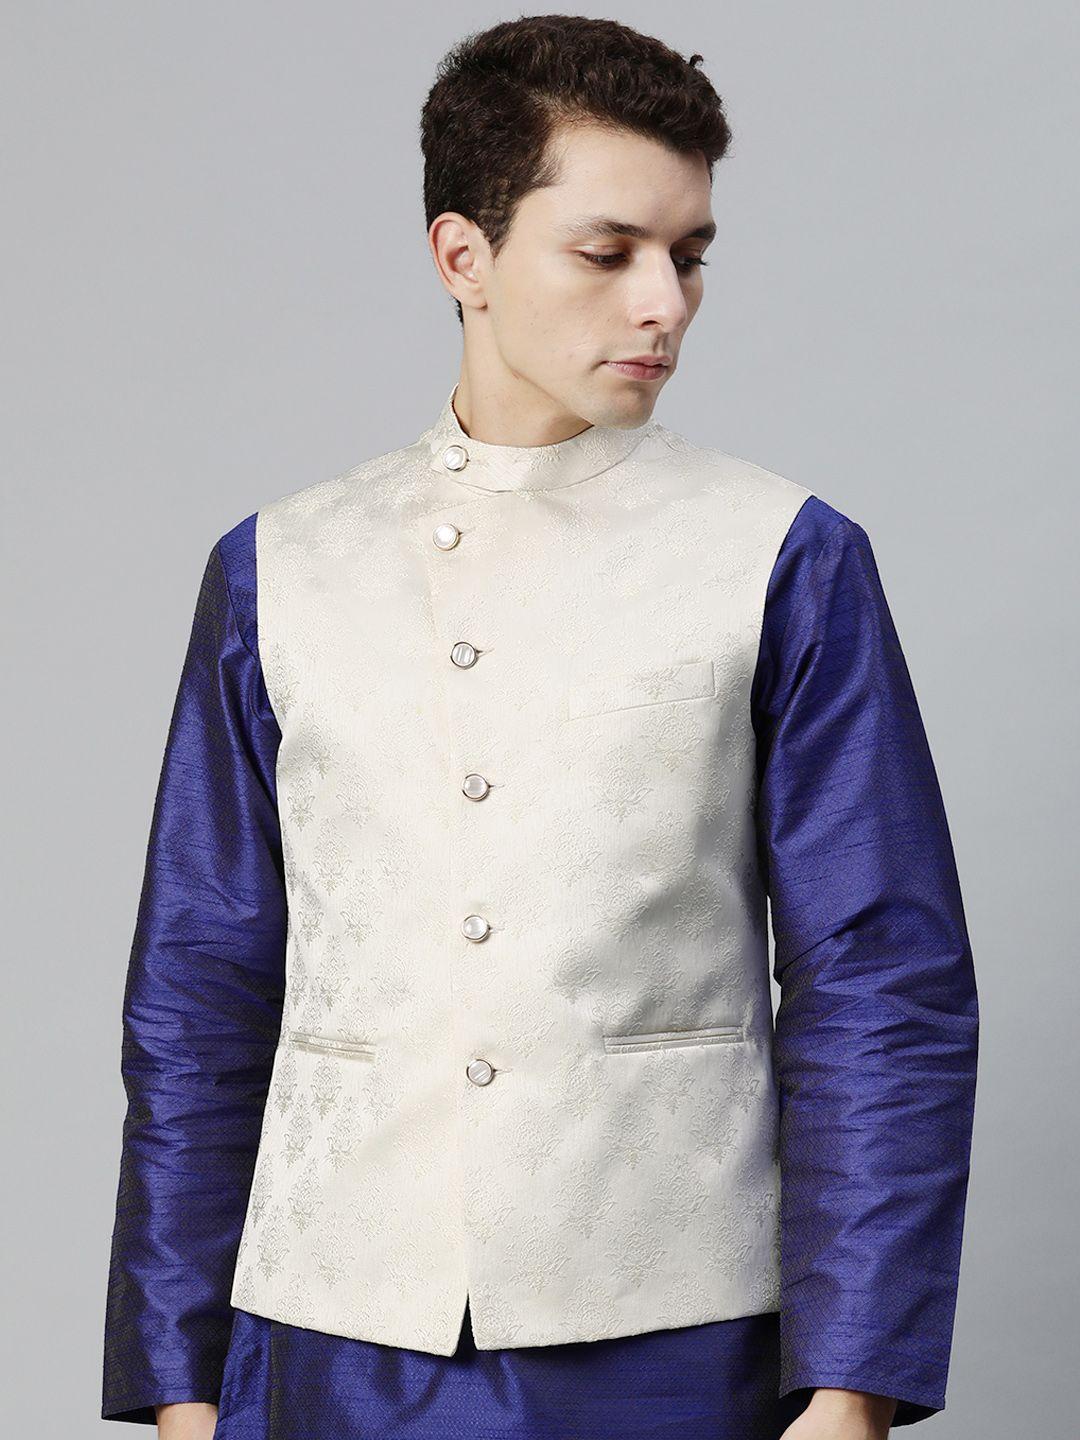 manq men woven design jaquard silk nehru jacket